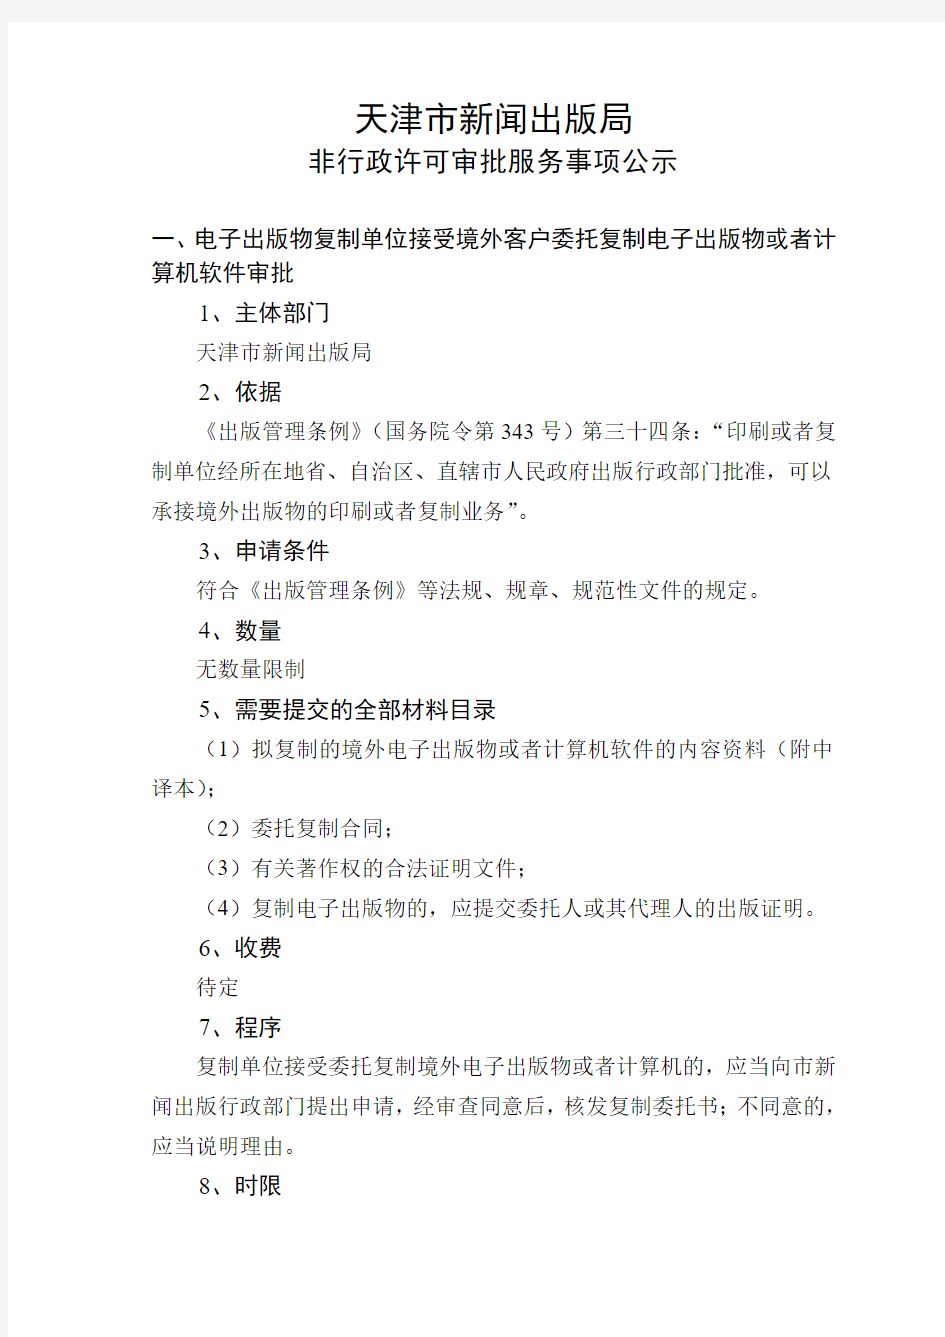 天津市新闻出版局行政许可事项公示表(精)